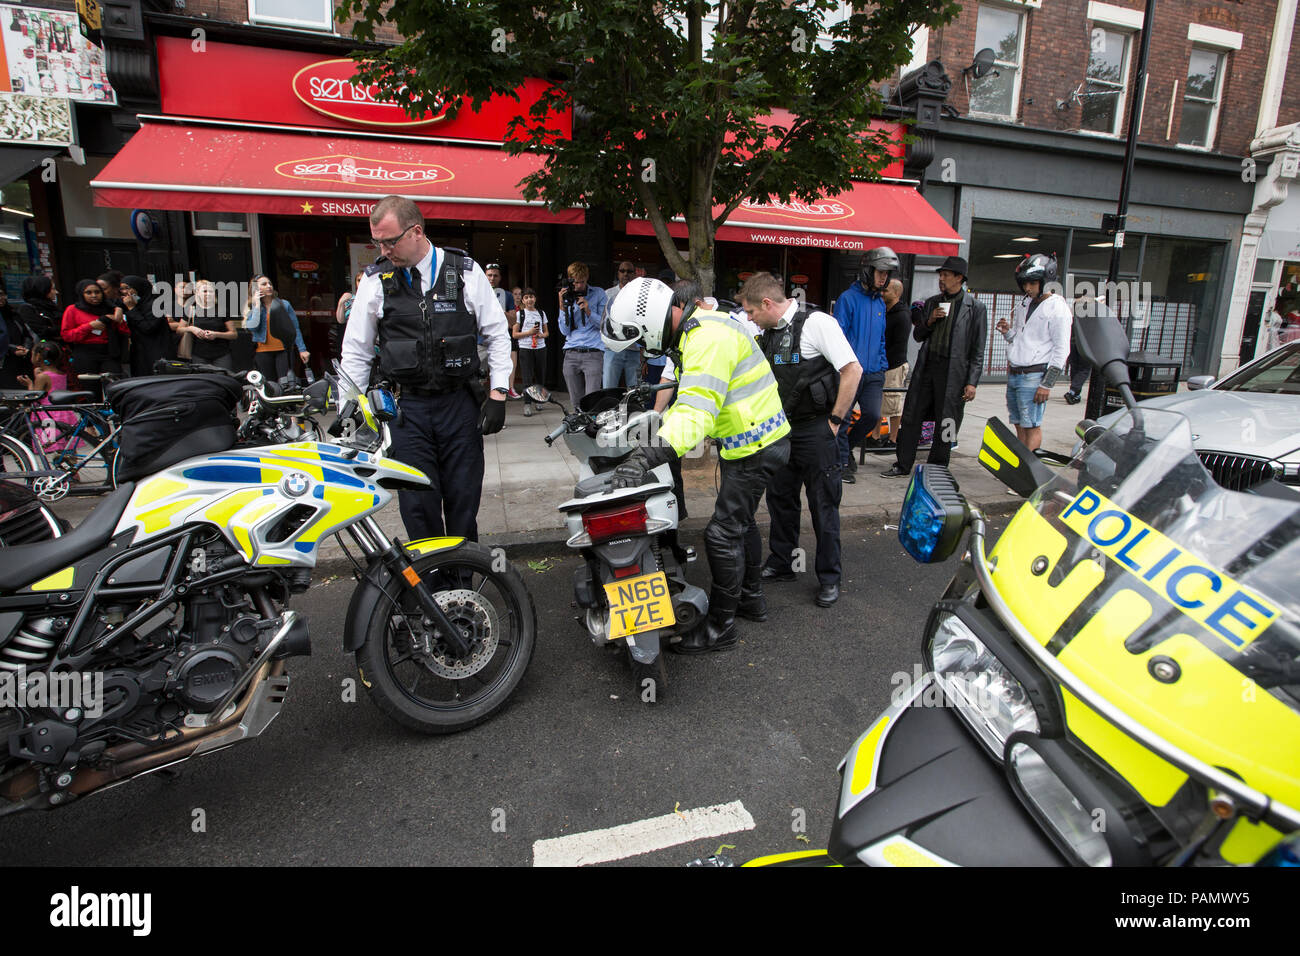 Venise l'opération, la Police Métropolitaine a crime cyclomoteur sur l'unité de recherche dans le centre de Londres pour lutter contre les criminels de cyclomoteurs dans la capitale, UK Banque D'Images